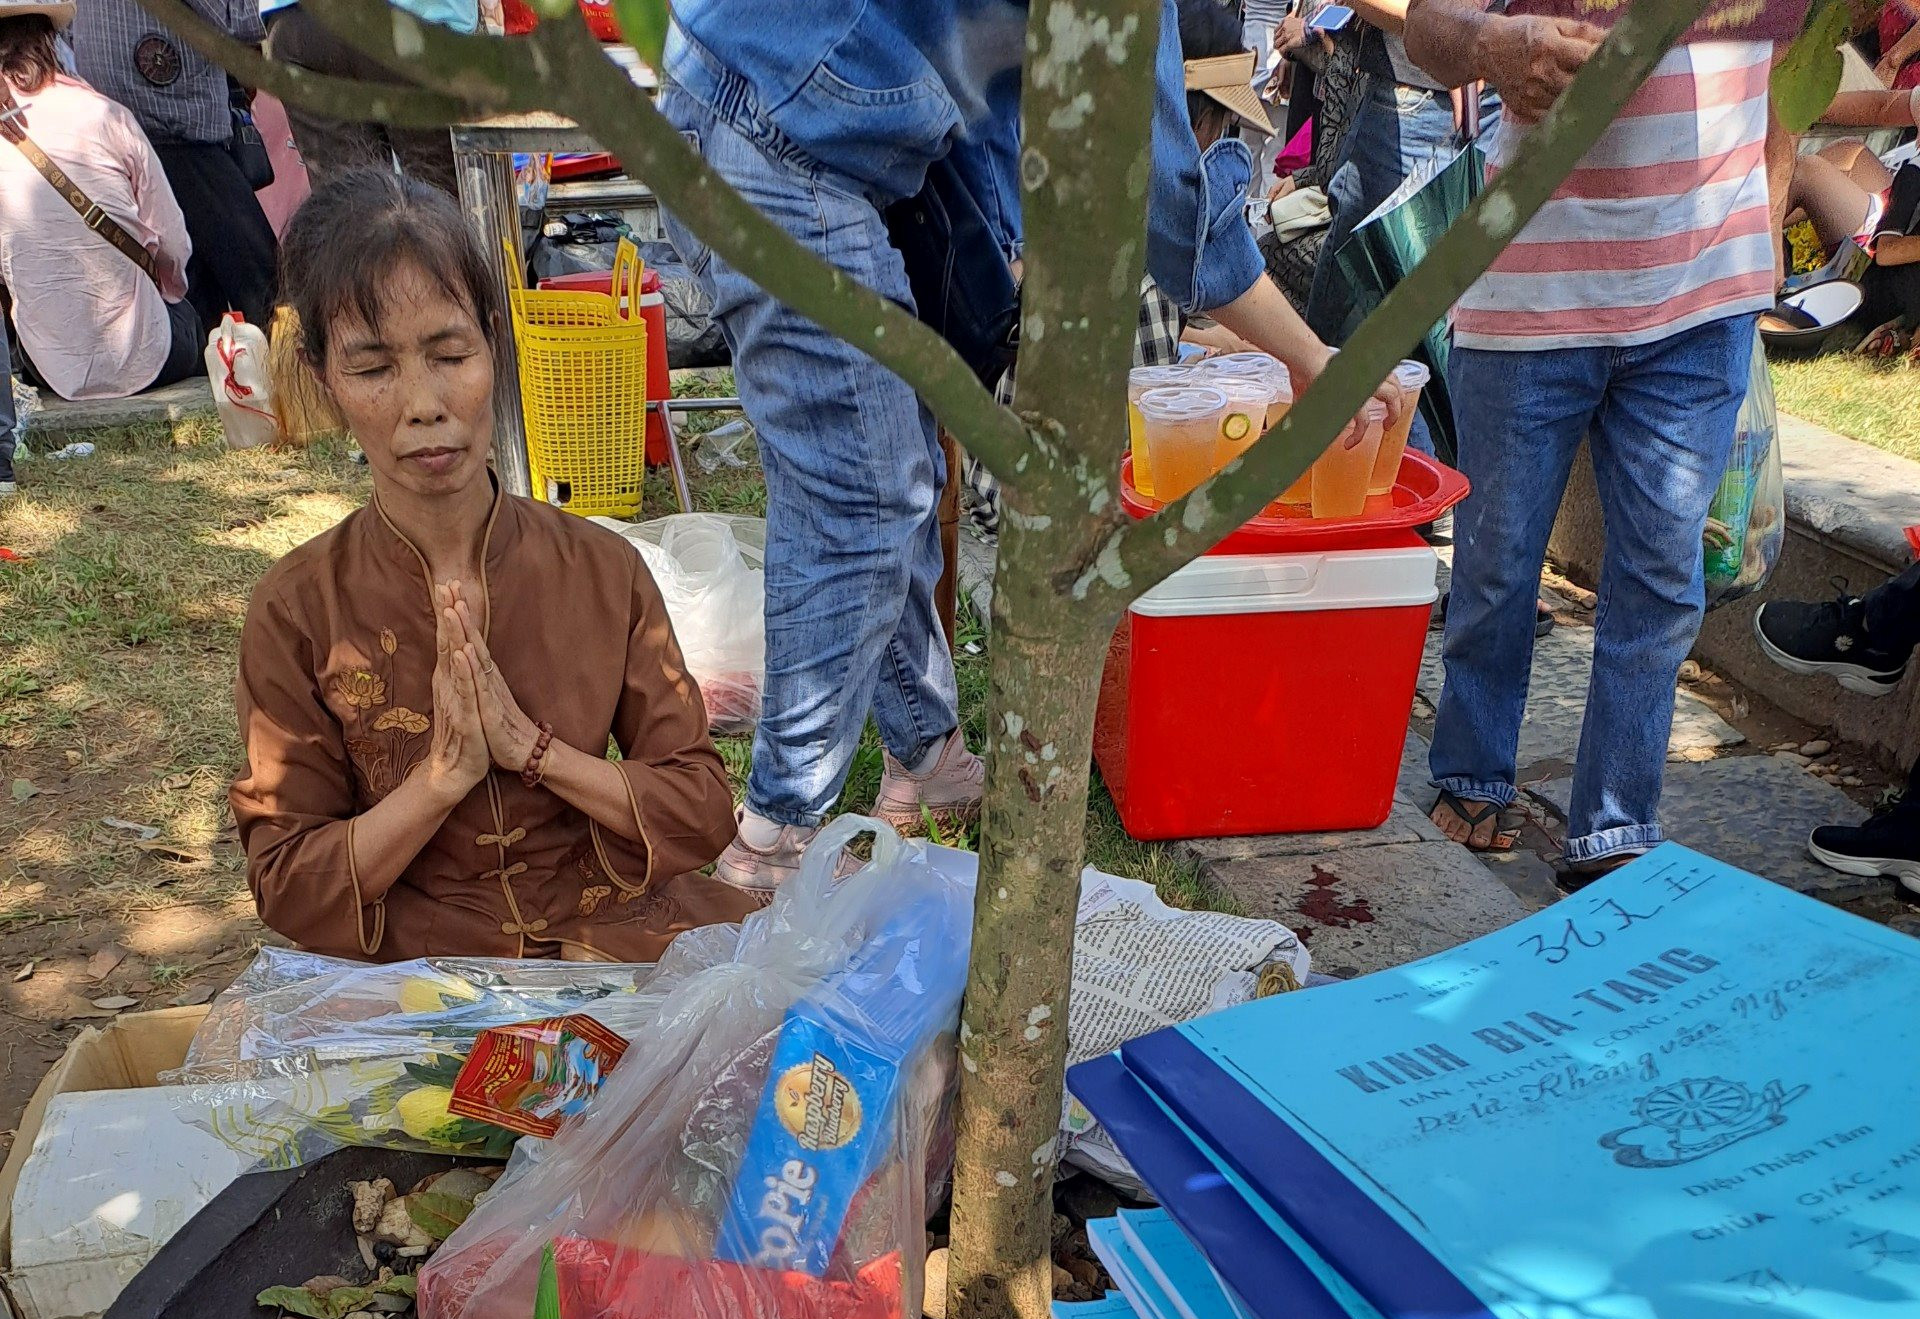 Phát hiện đối tượng tán phát tài liệu tôn giáo trái phép tại lễ hội mùa thu Côn Sơn - Kiếp Bạc